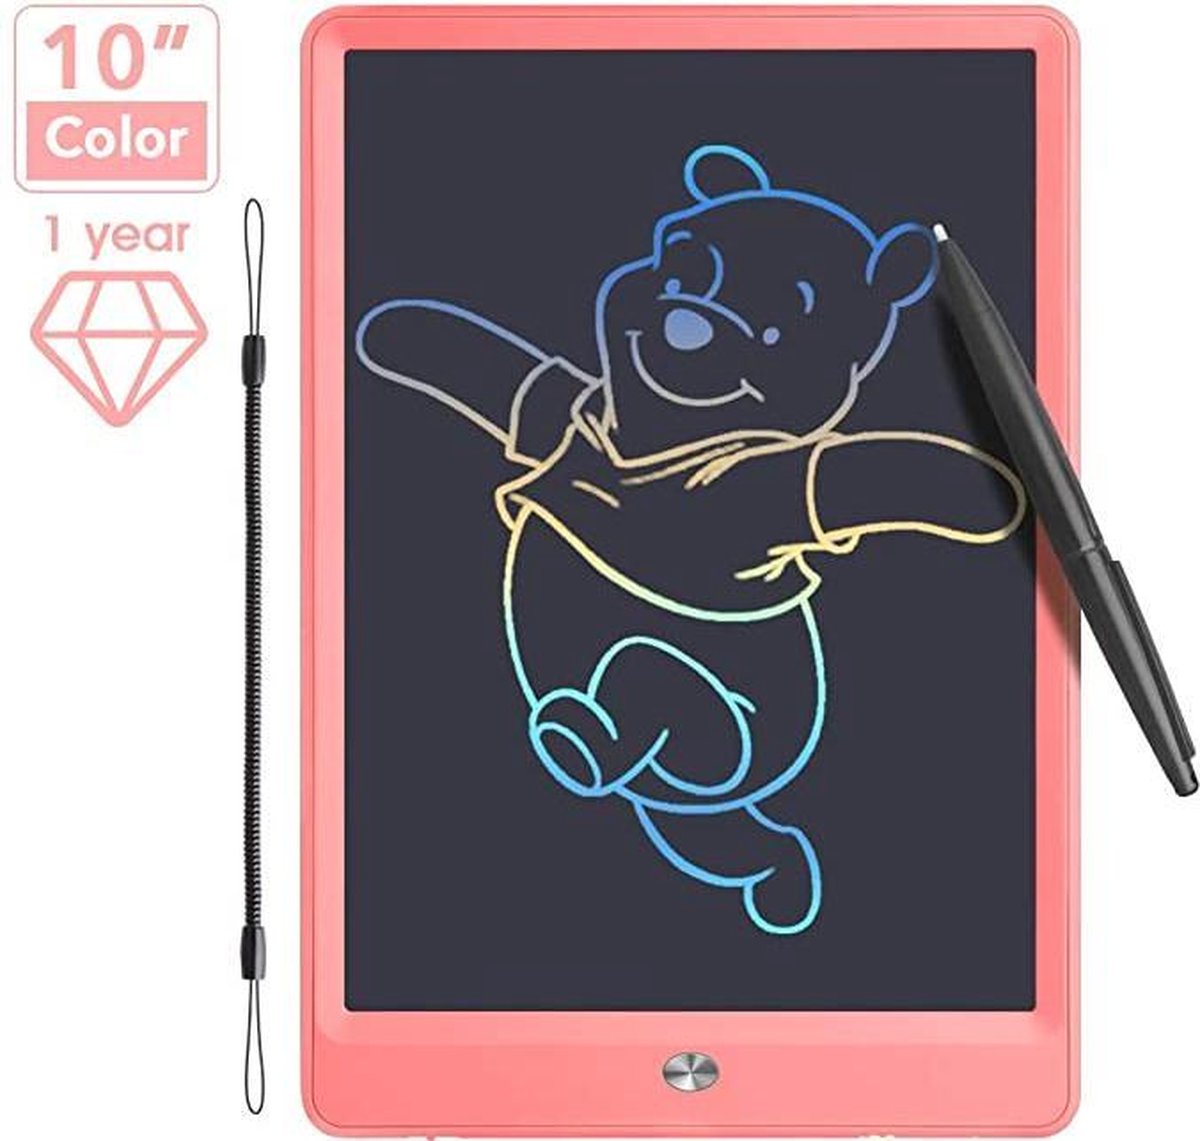 Tekentablet - Jeon Lcd-schrijfbord met kleurrijk scherm, 10 inch wisbaar tekenblok Doodle board, grafische tablet tekenbord met schakelslot, cadeau voor kinderen en volwassenen (10 inch, roze)